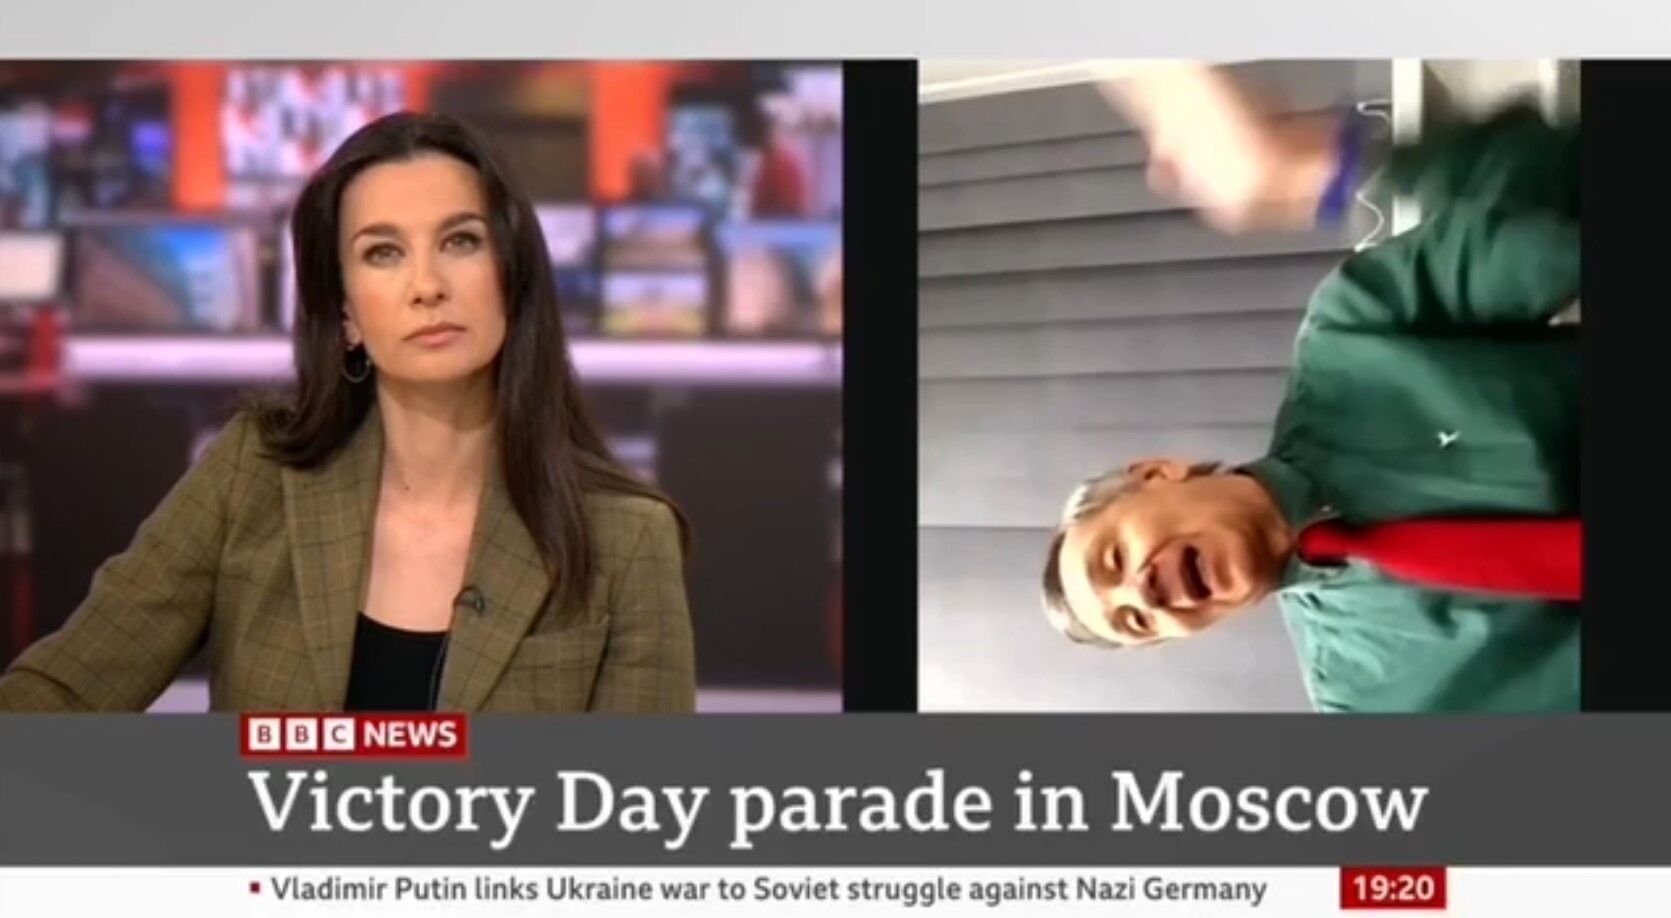 Российского пропагандиста Маркова "накрыло" в эфире британского ТВ после слов ведущей об Украине. Видео